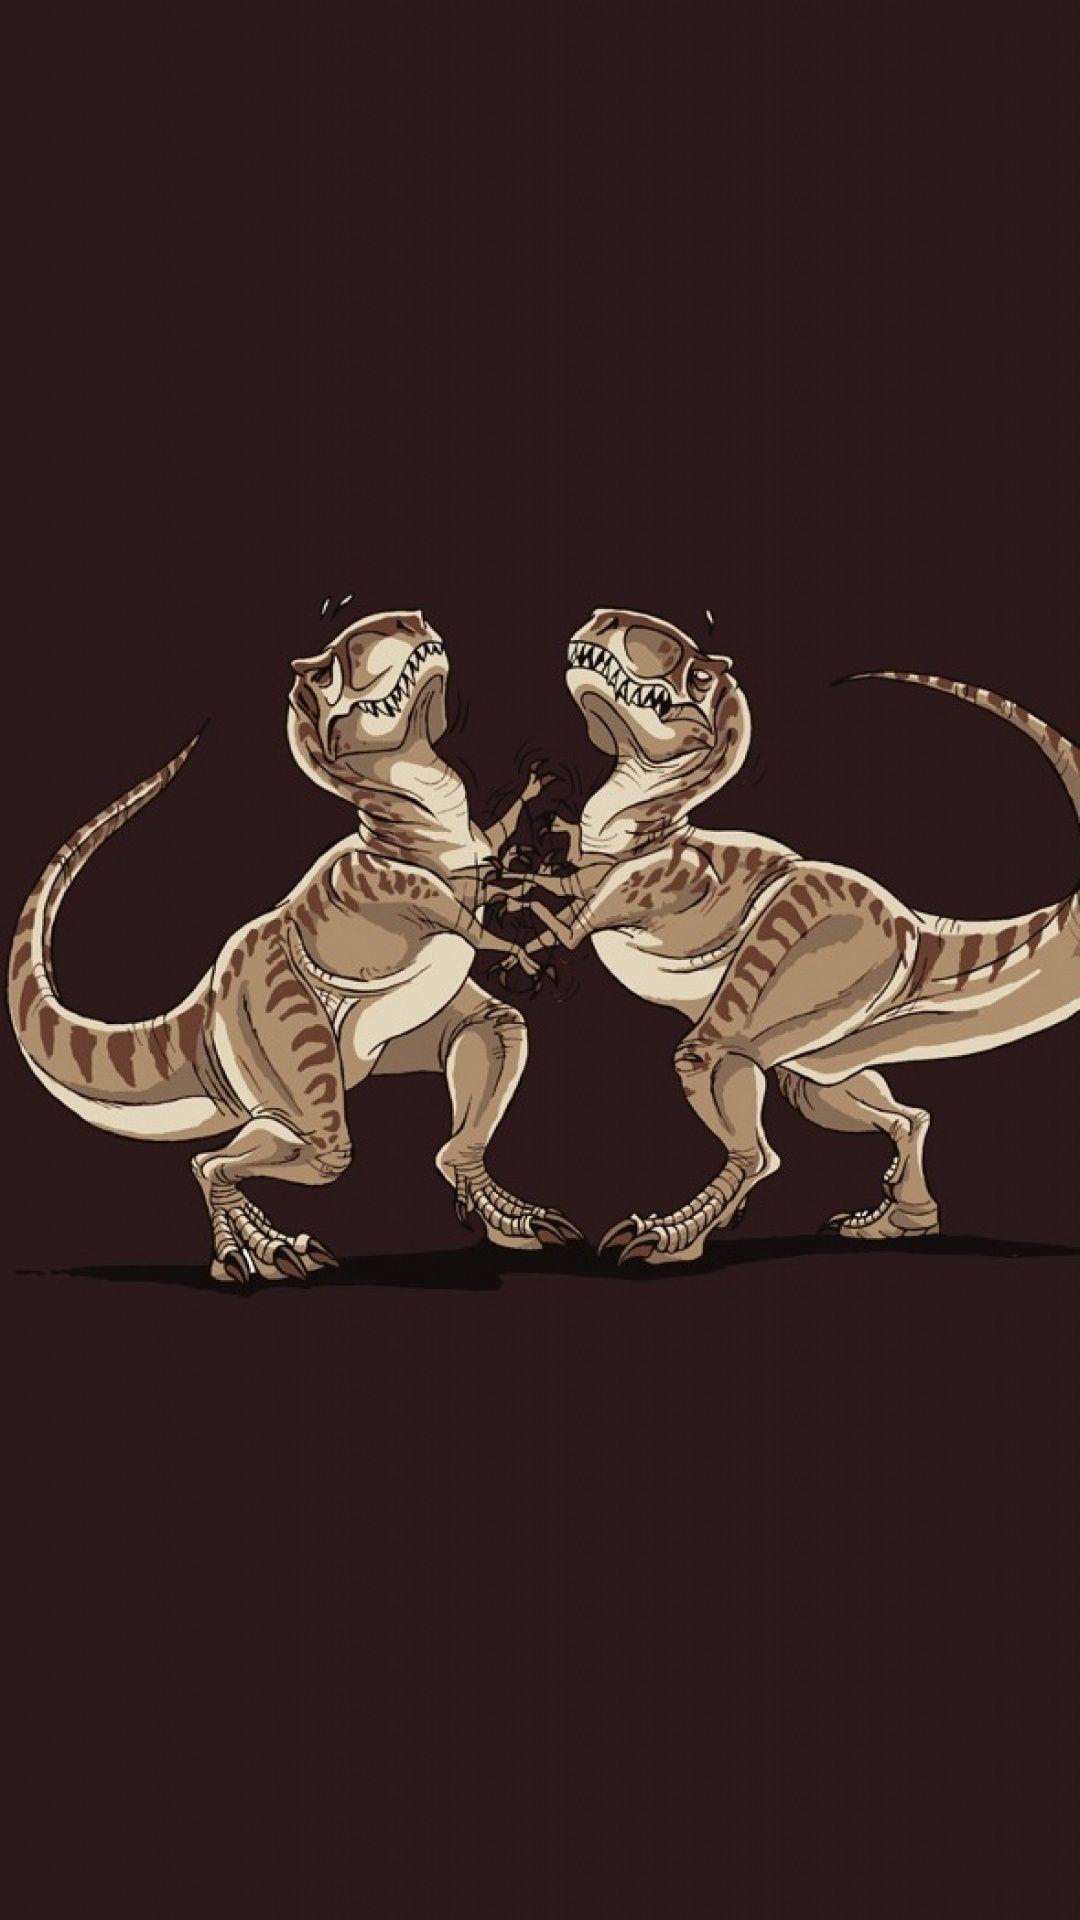 Funny Dinosaur Fight S5 Wallpaper